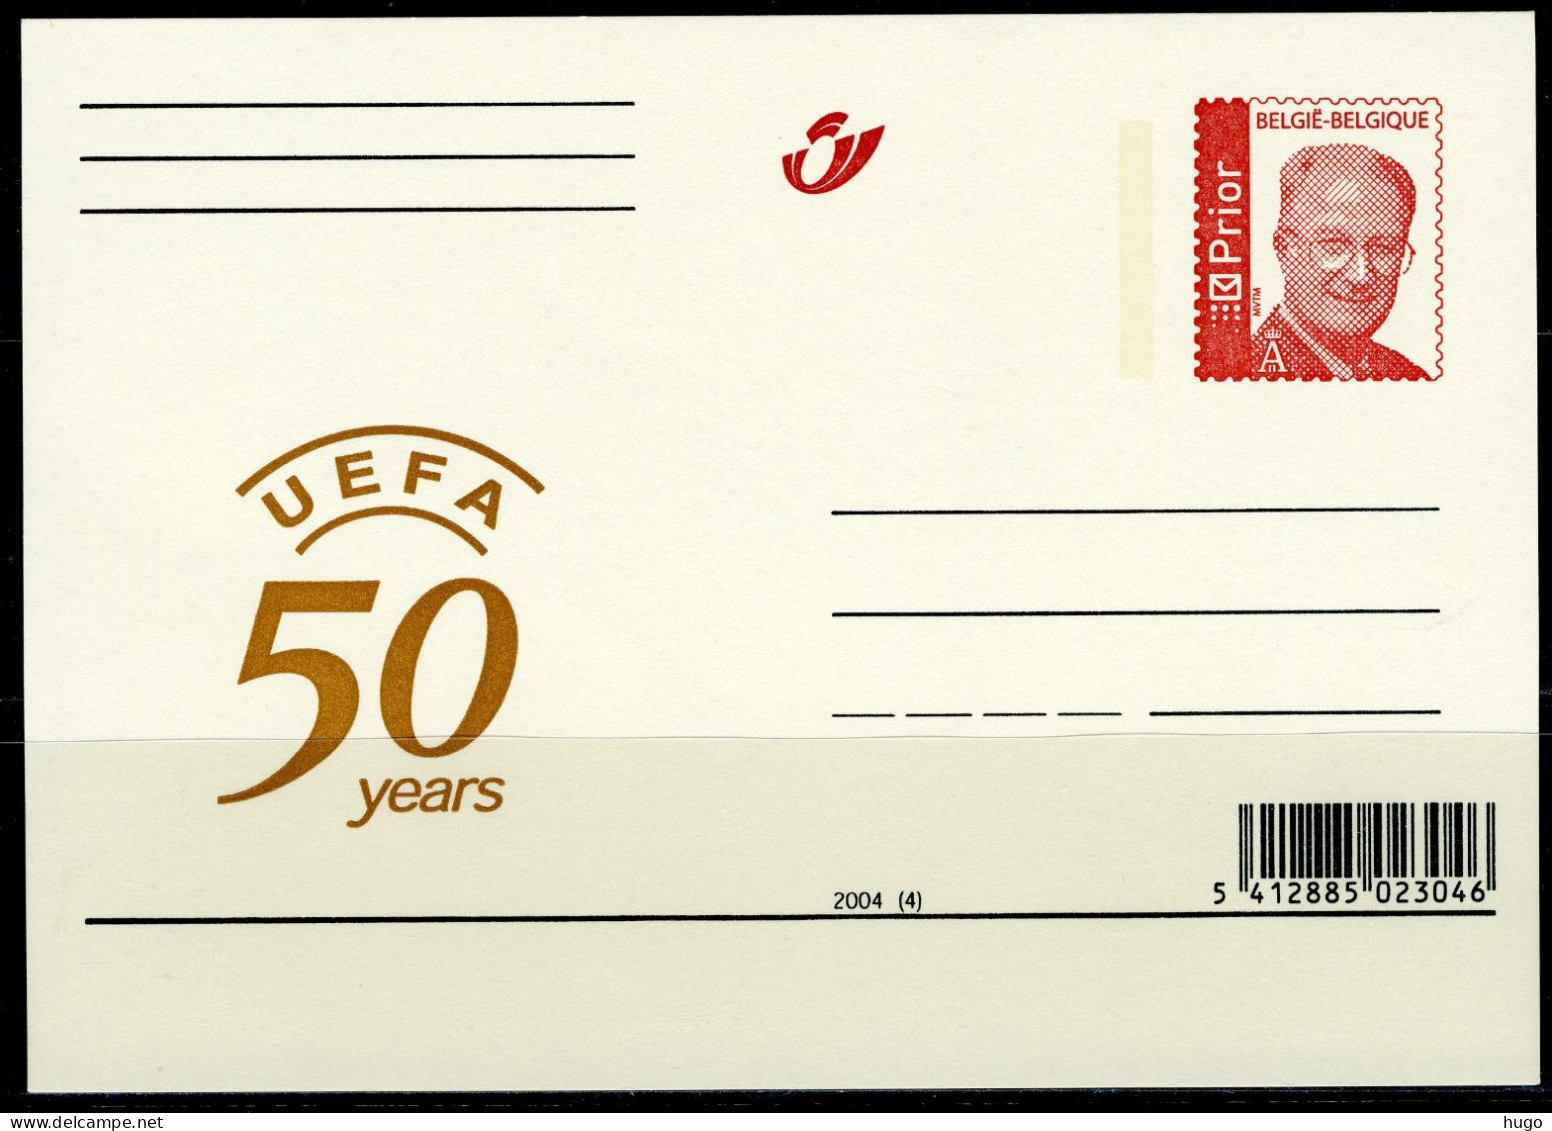 (B) België Briefkaart  2004(4) - UEFA 50 Years - Geïllustreerde Briefkaarten (1971-2014) [BK]